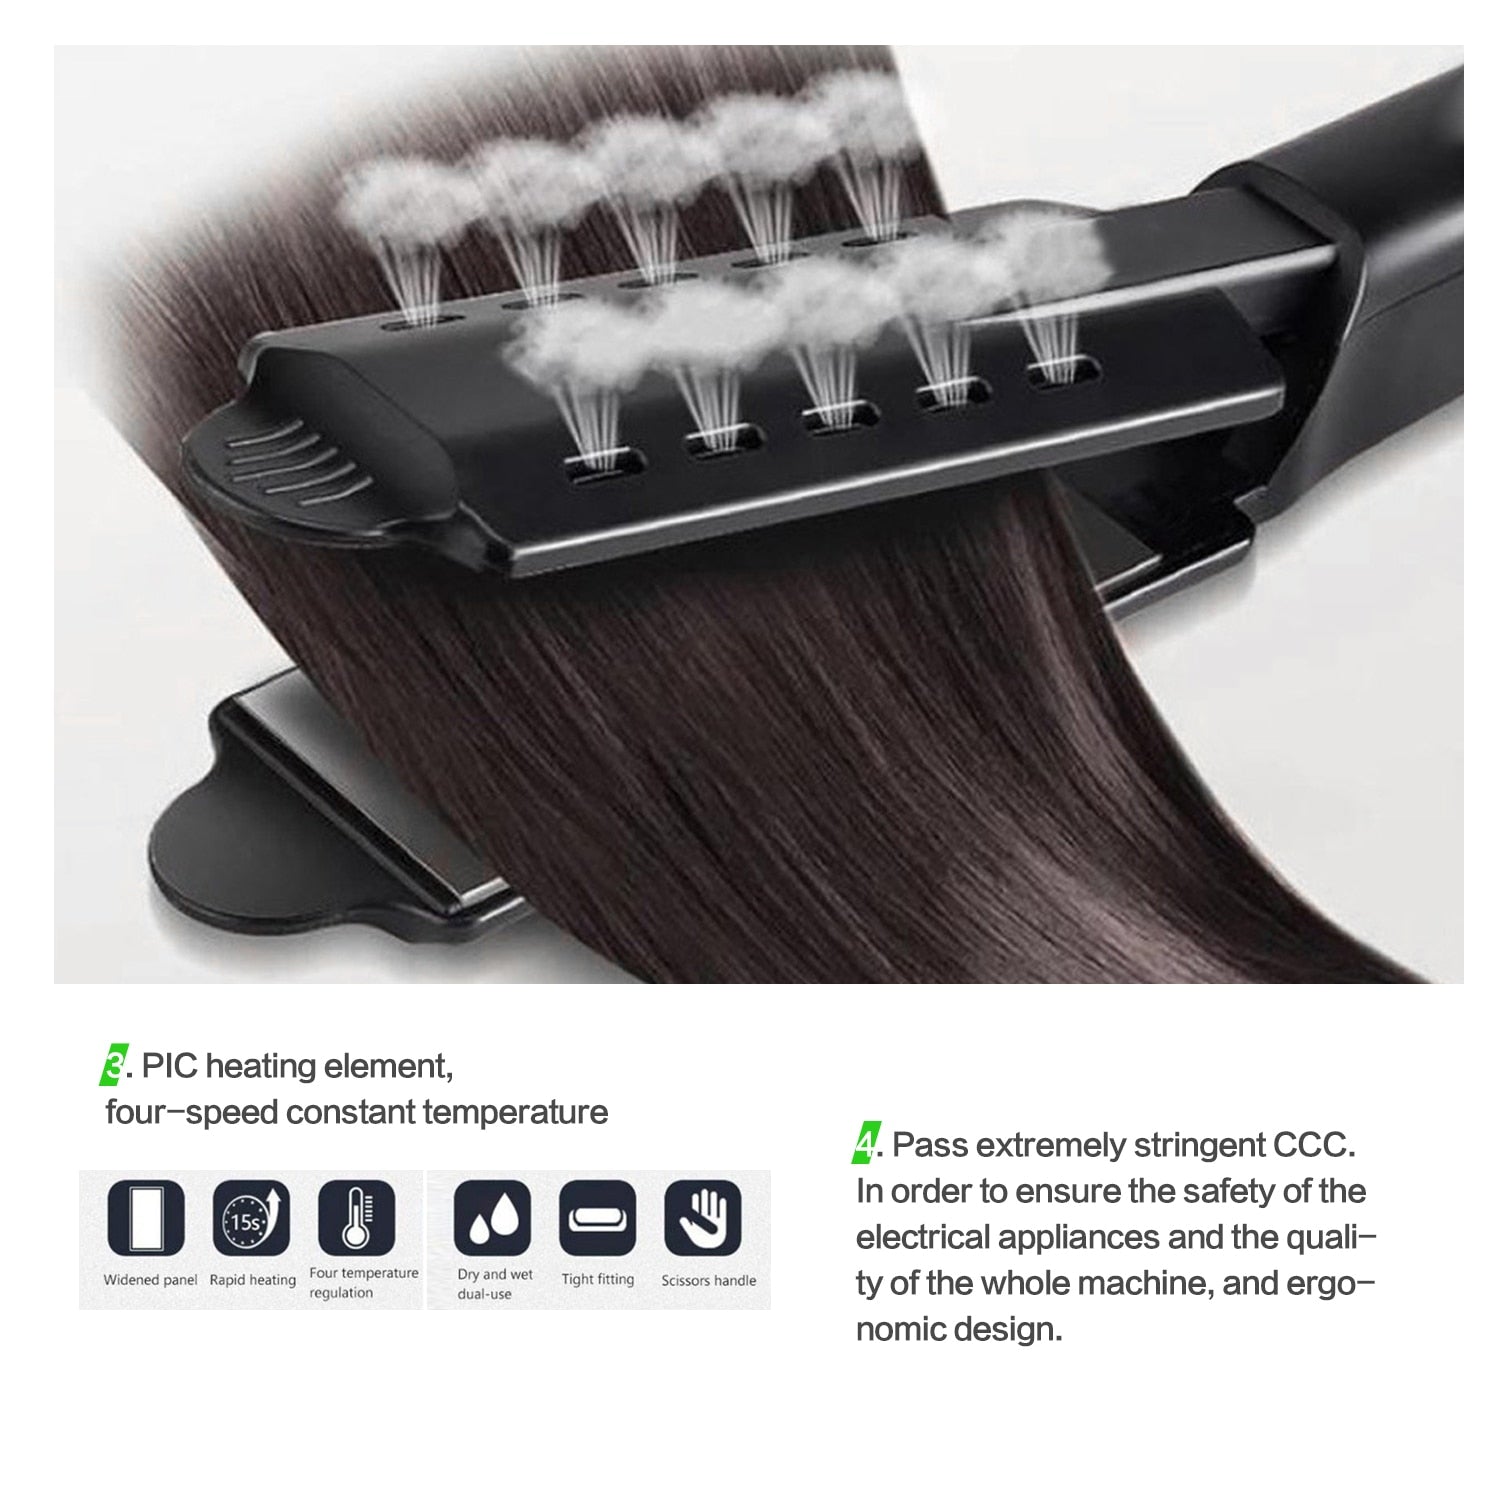 Hair Straightener - Curling Hair Tool